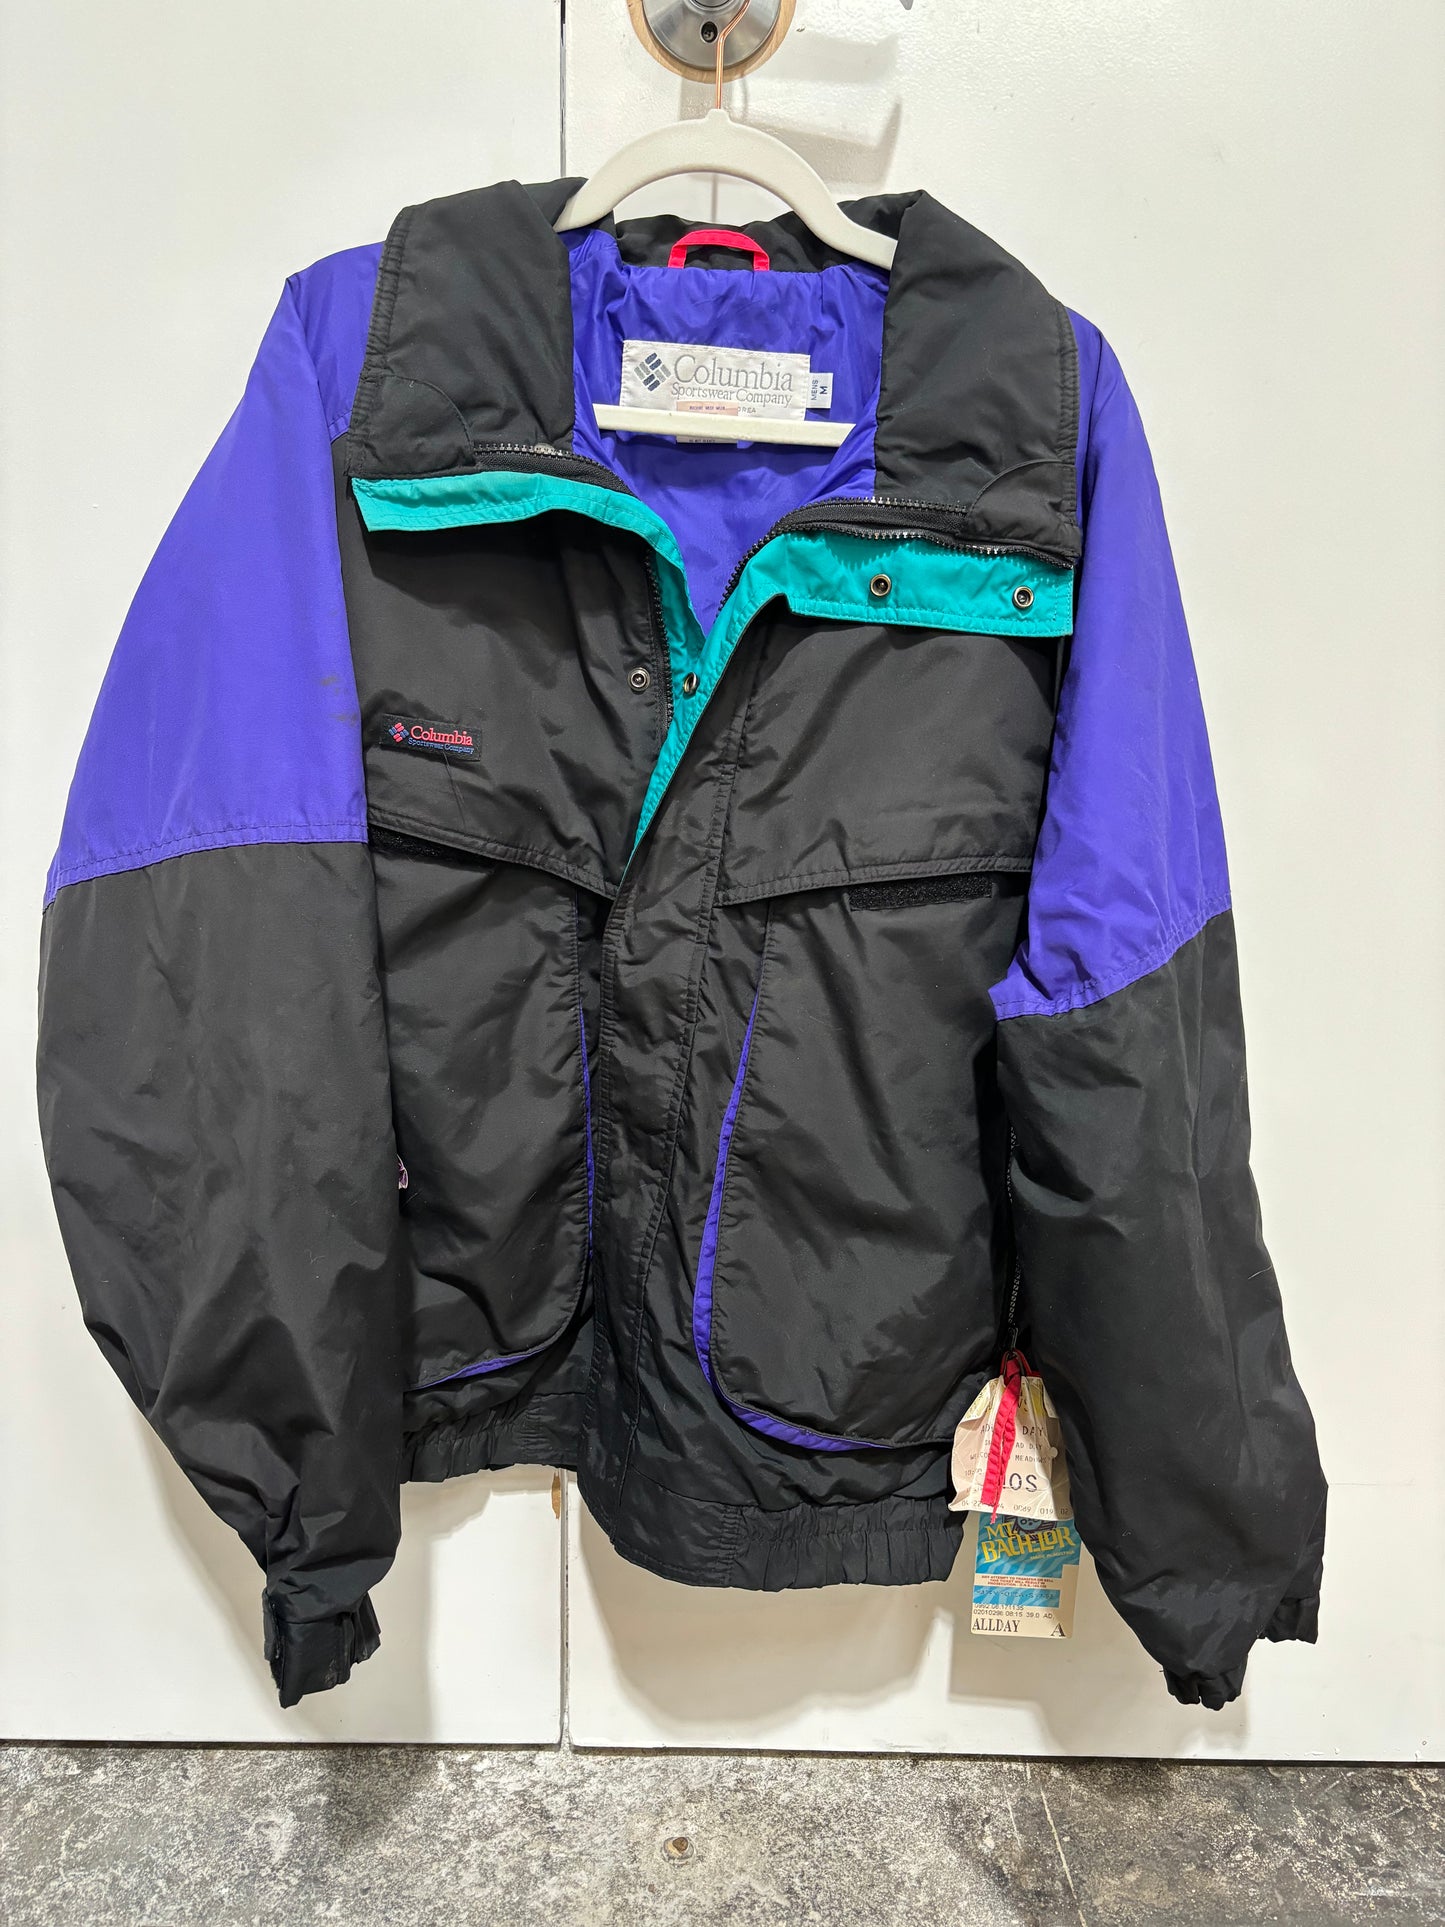 Vintage Columbia ski jacket